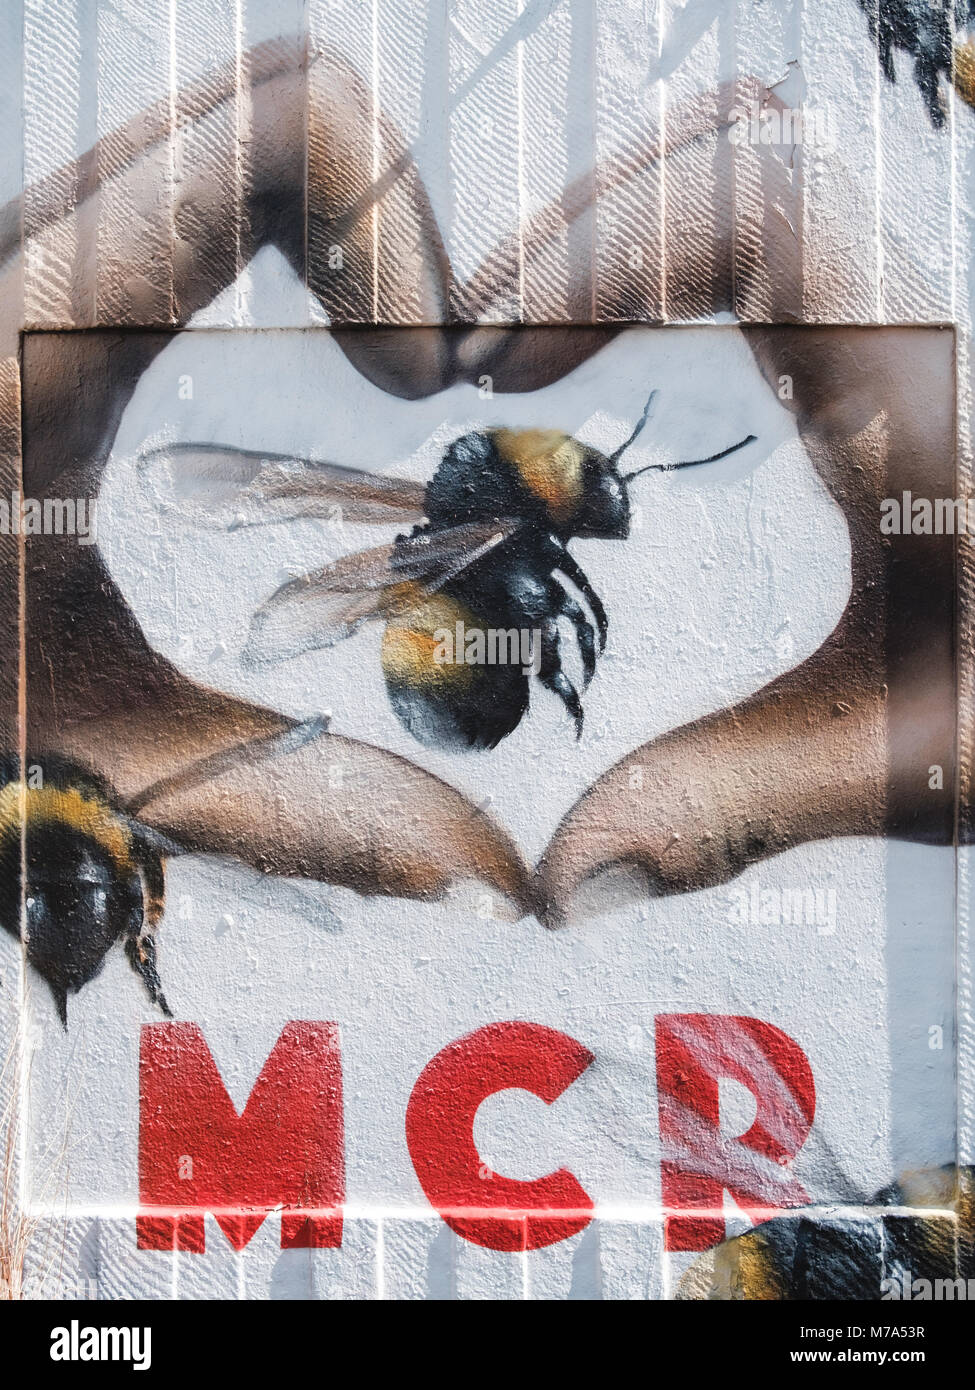 Arte en la calle en el barrio del norte de Manchester. El amor MCR diseño es parte de la respuesta al ataque terrorista en la arena de Manchester en 2017. Foto de stock